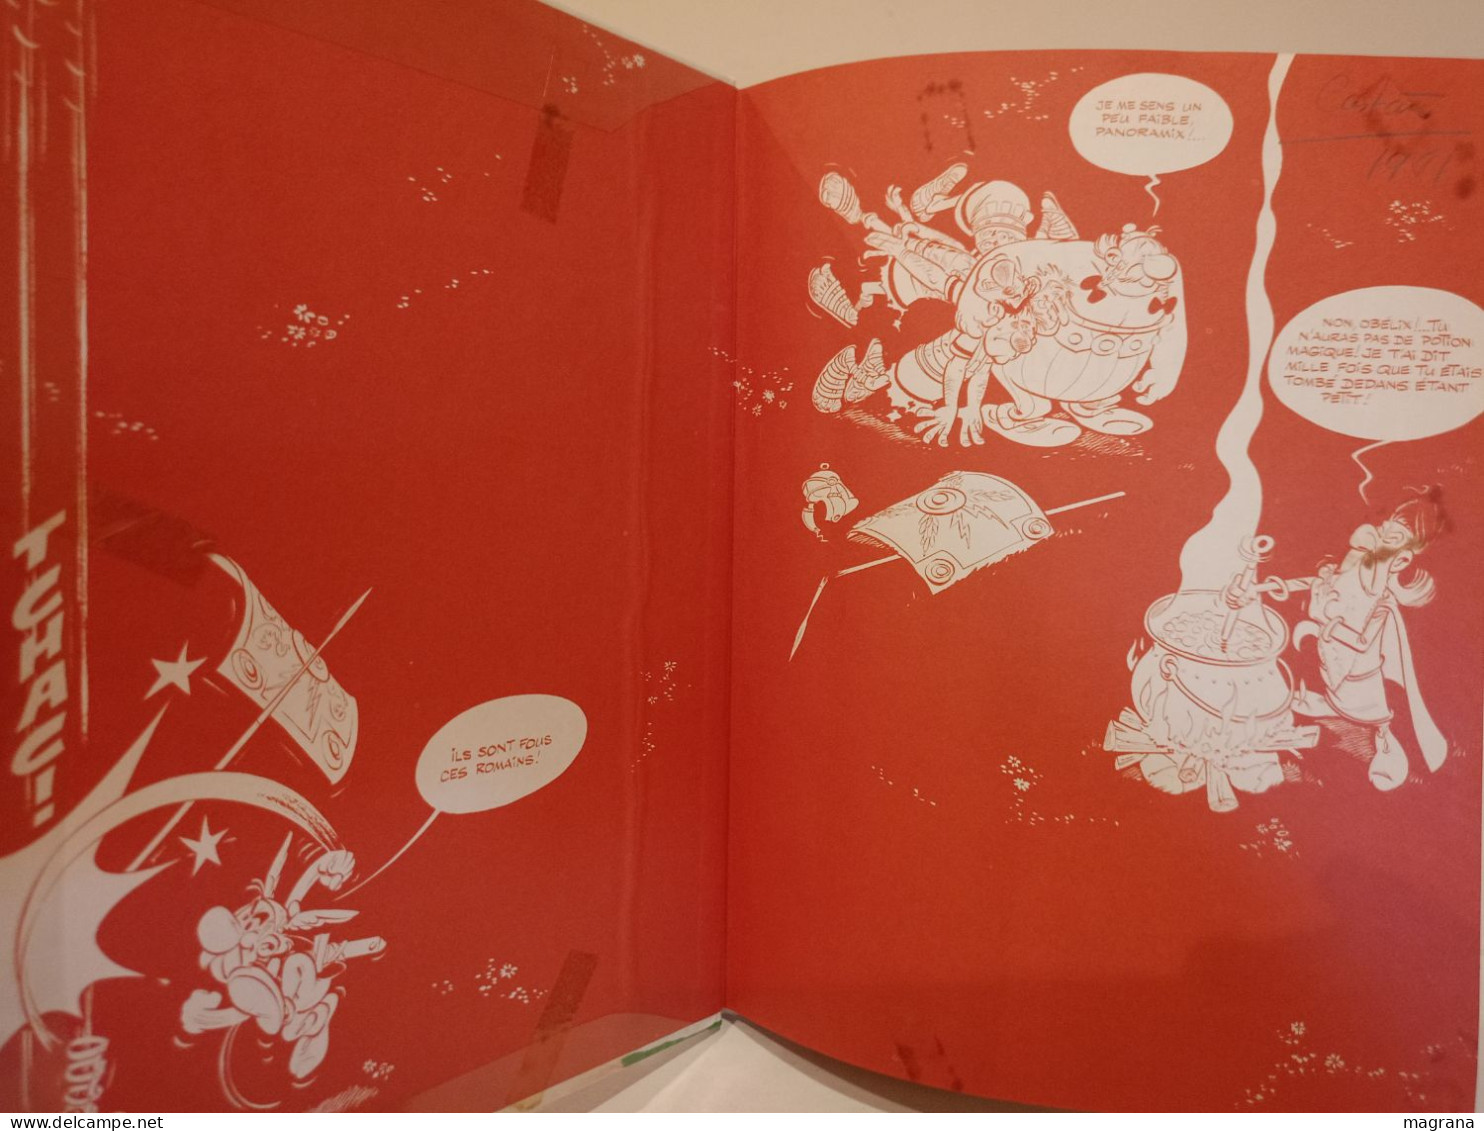 Une aventure d'Astérix le Gavlois. Obélix et compagnie. Texte de Goscinny, dessins de Uderzo. Dargaud Editeur. 1976.